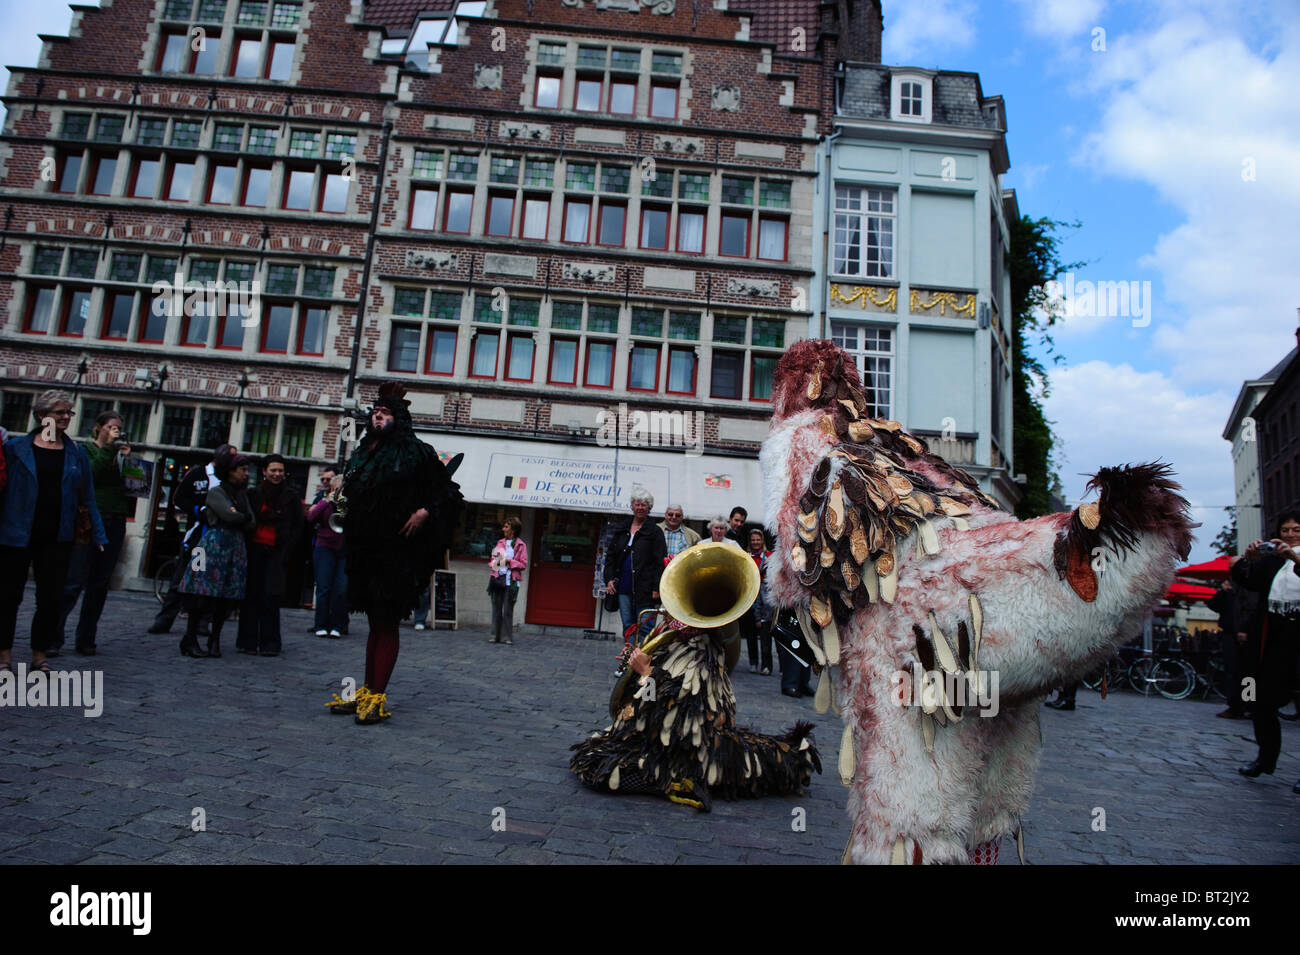 Street Performers in Gent, Belgium Stock Photo